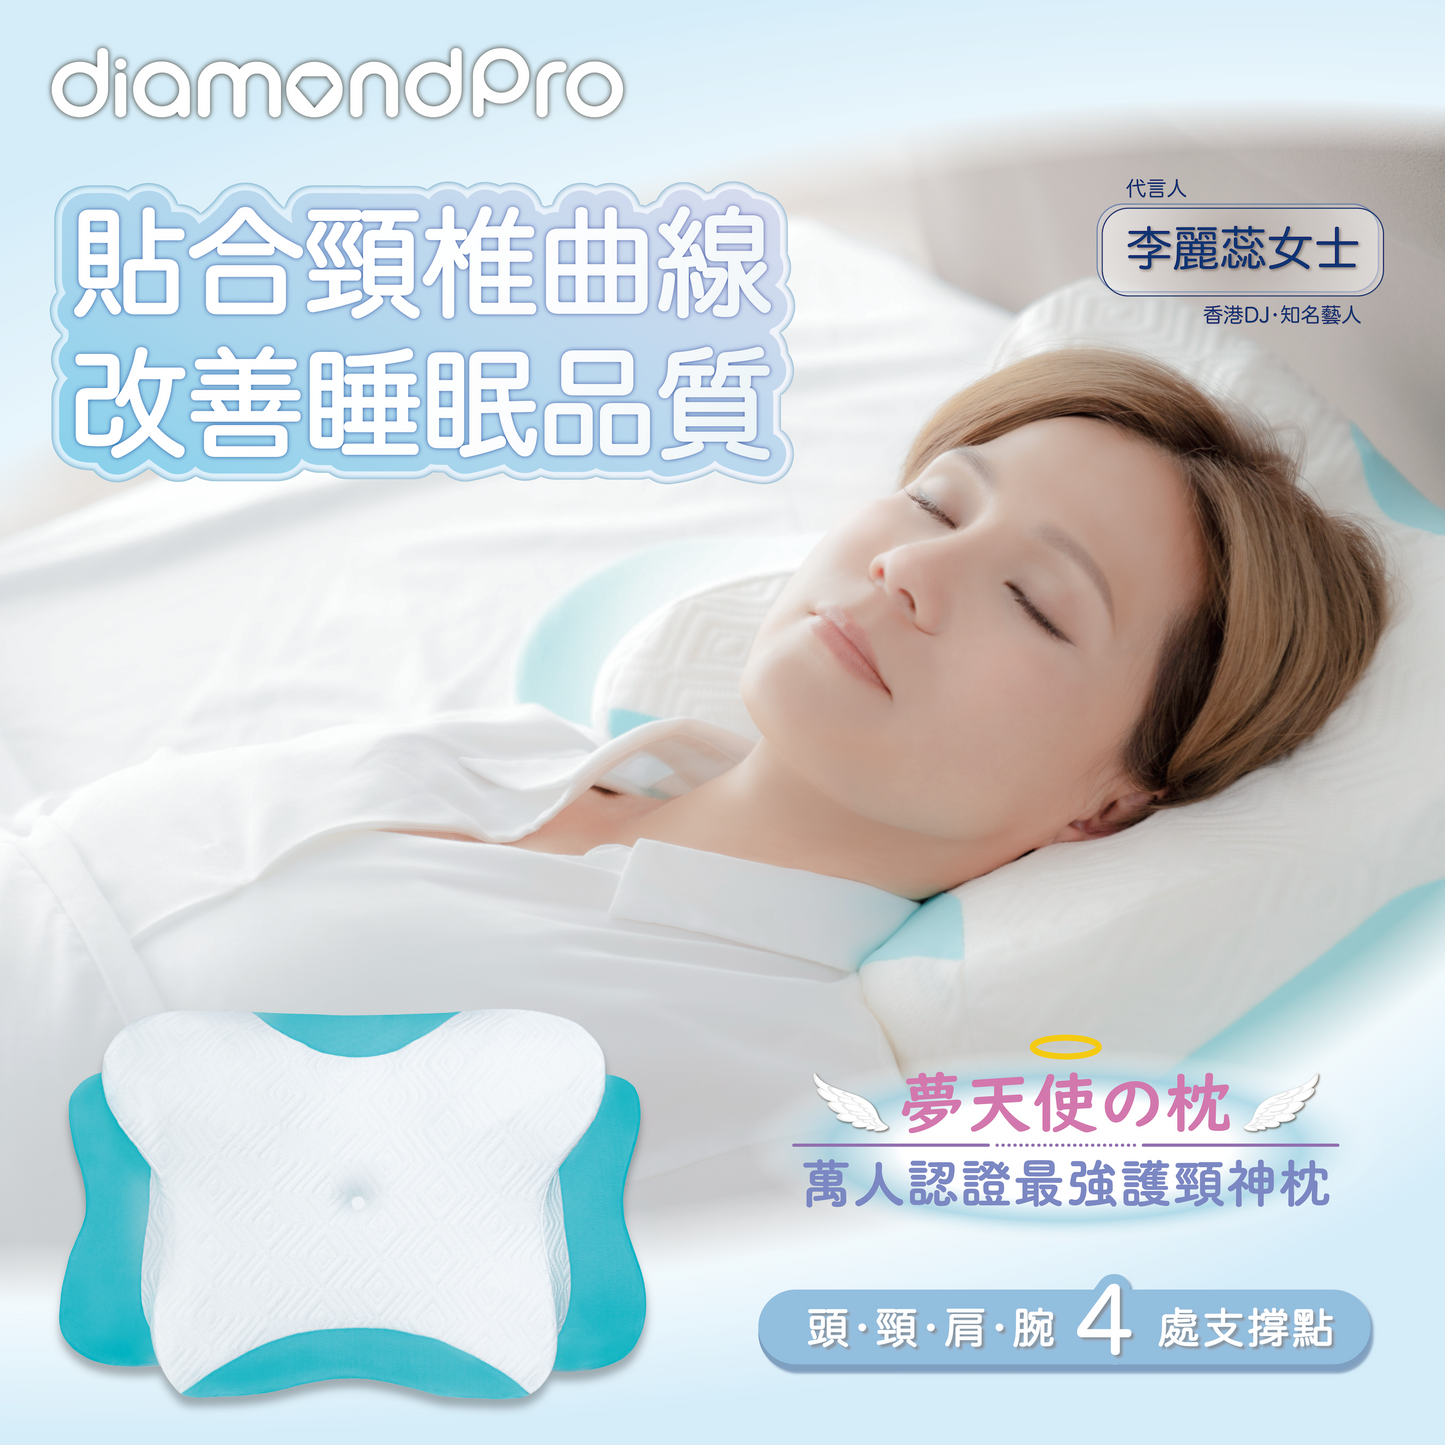 Diamondpro - 夢天使之枕